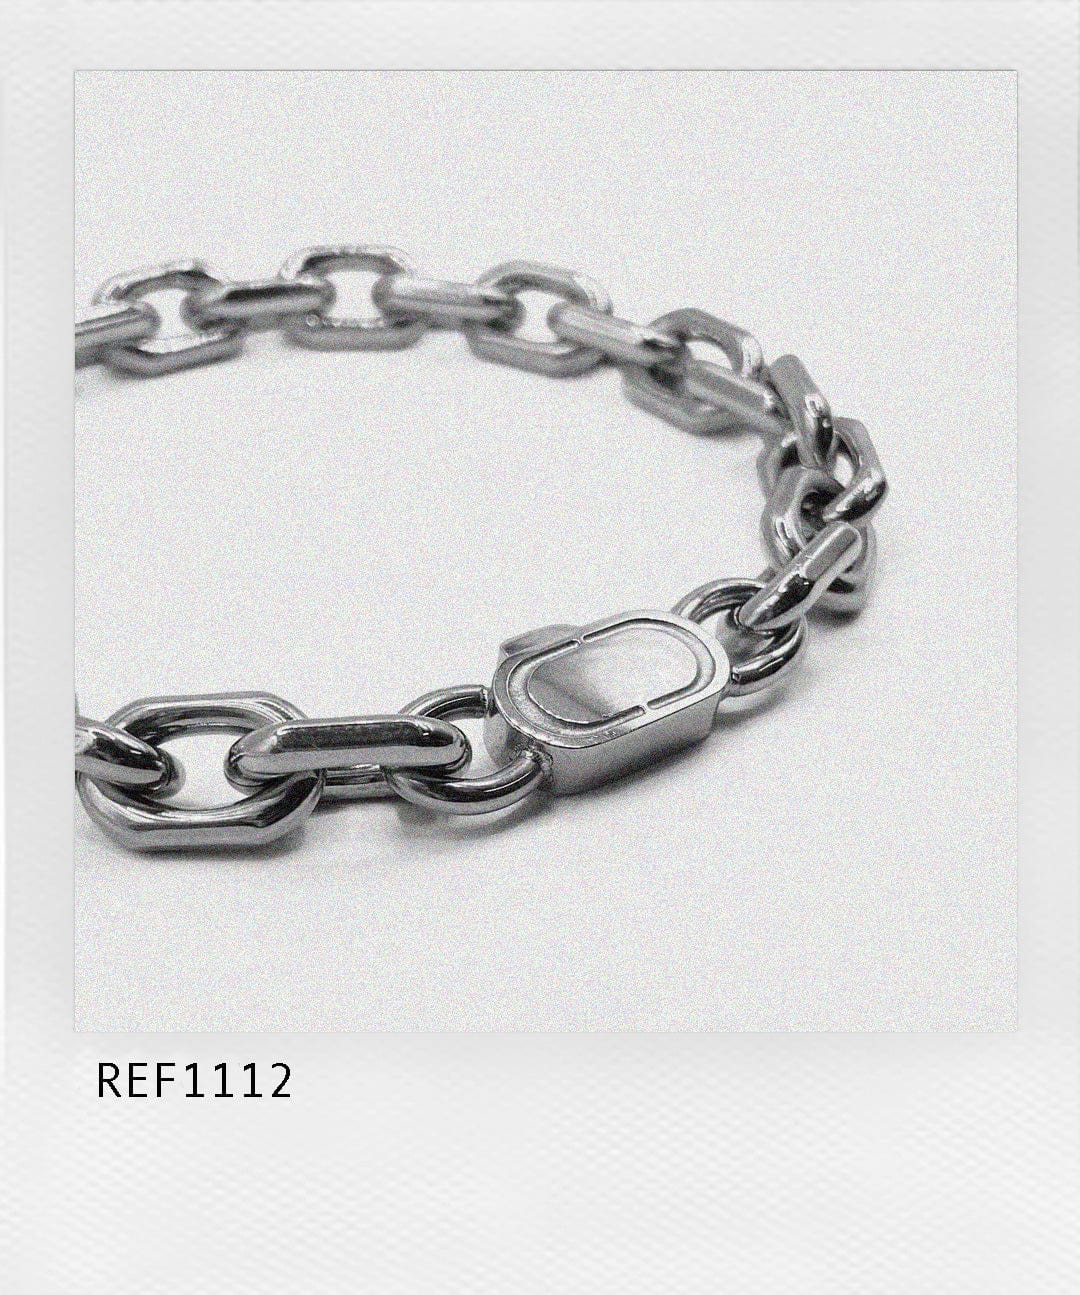 Anchor Link Bracelet (Silver)